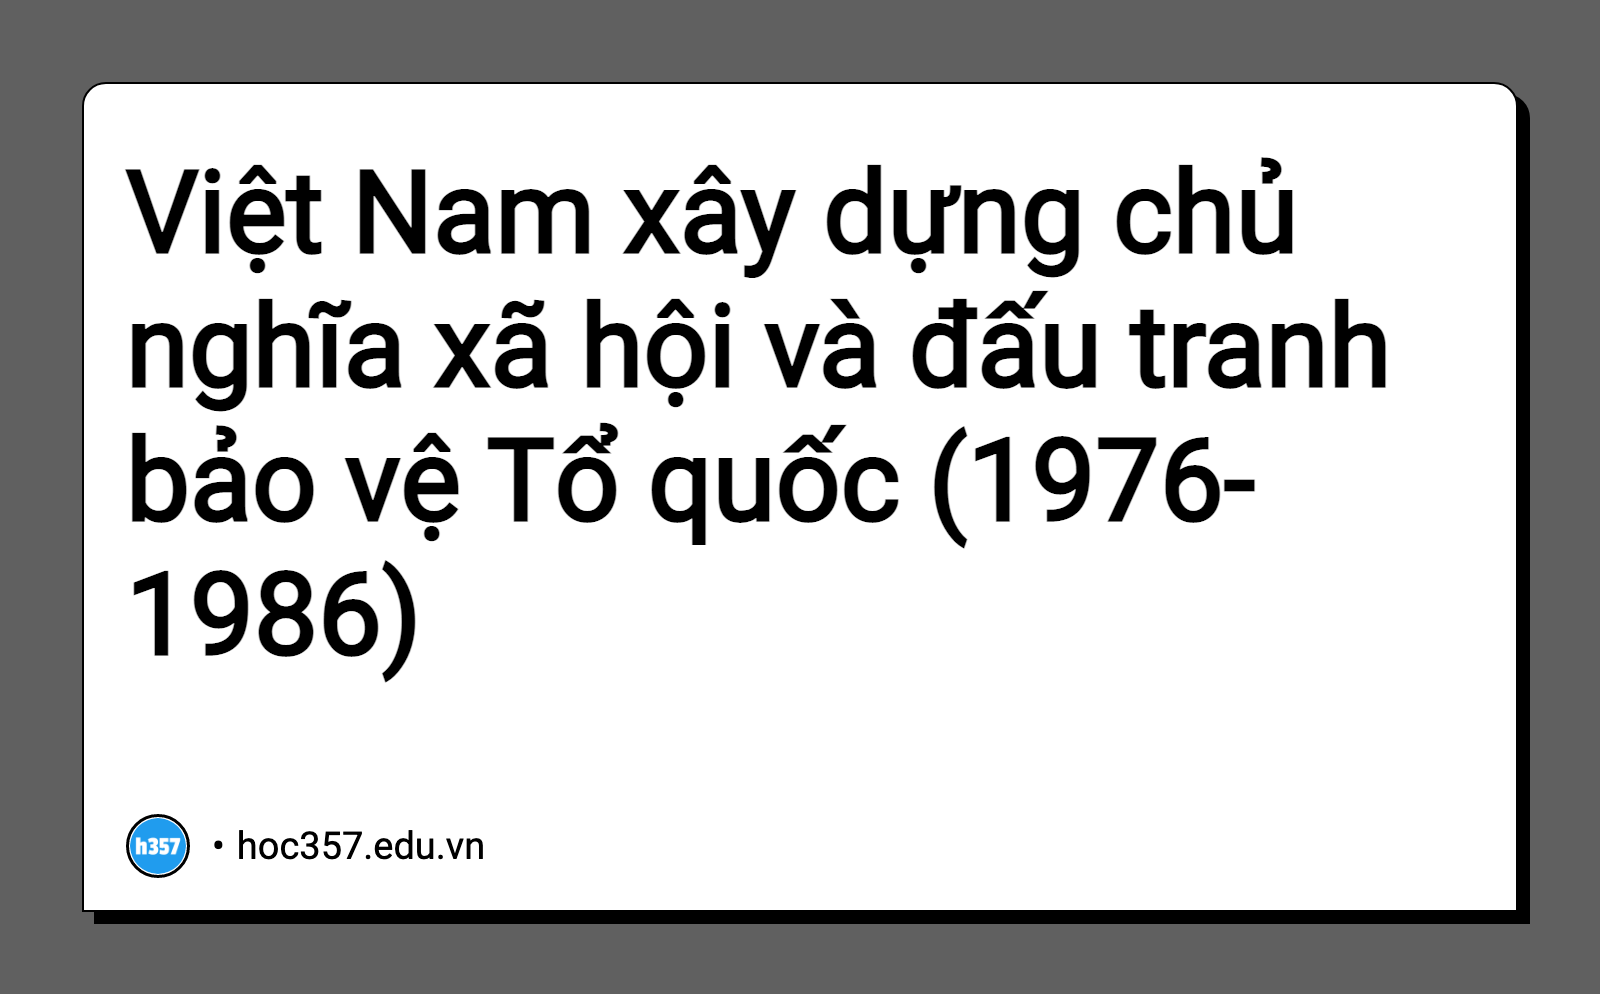 Hình minh họa Việt Nam xây dựng chủ nghĩa xã hội và đấu tranh bảo vệ Tổ quốc (1976-1986)